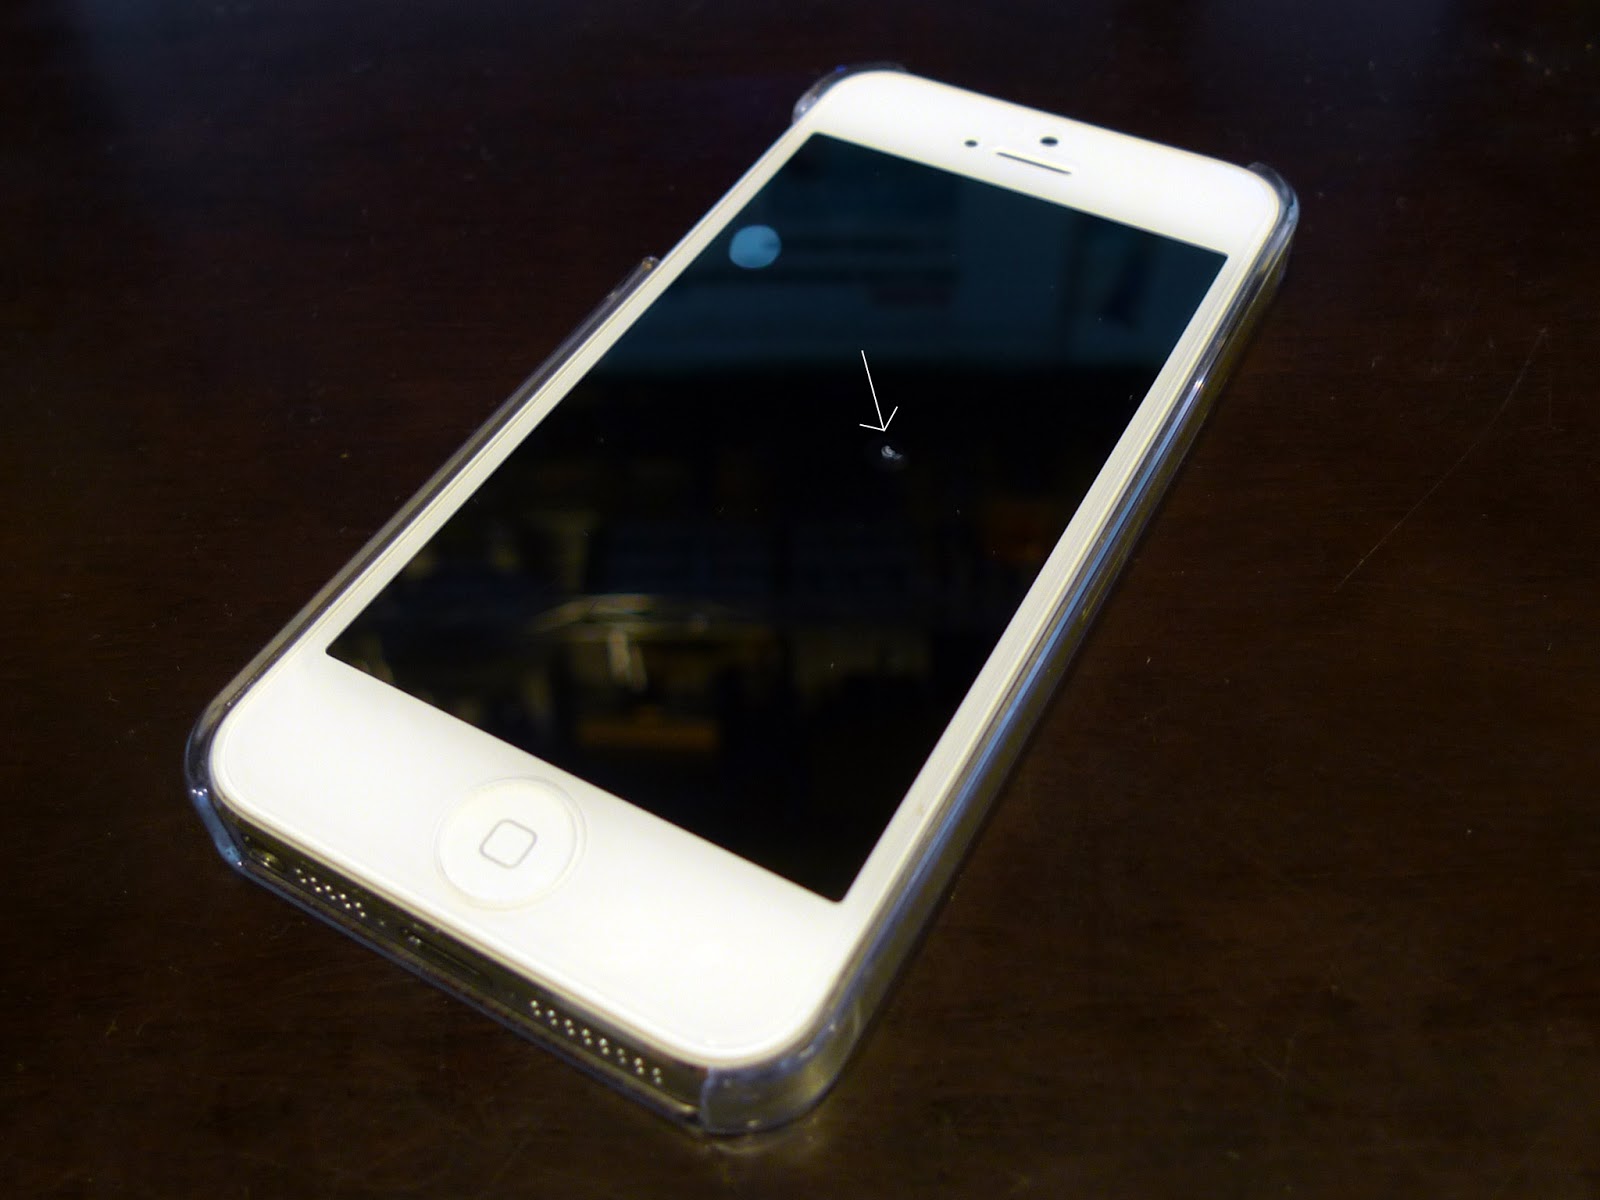 kurumiyama's blog: iPhoneの傷